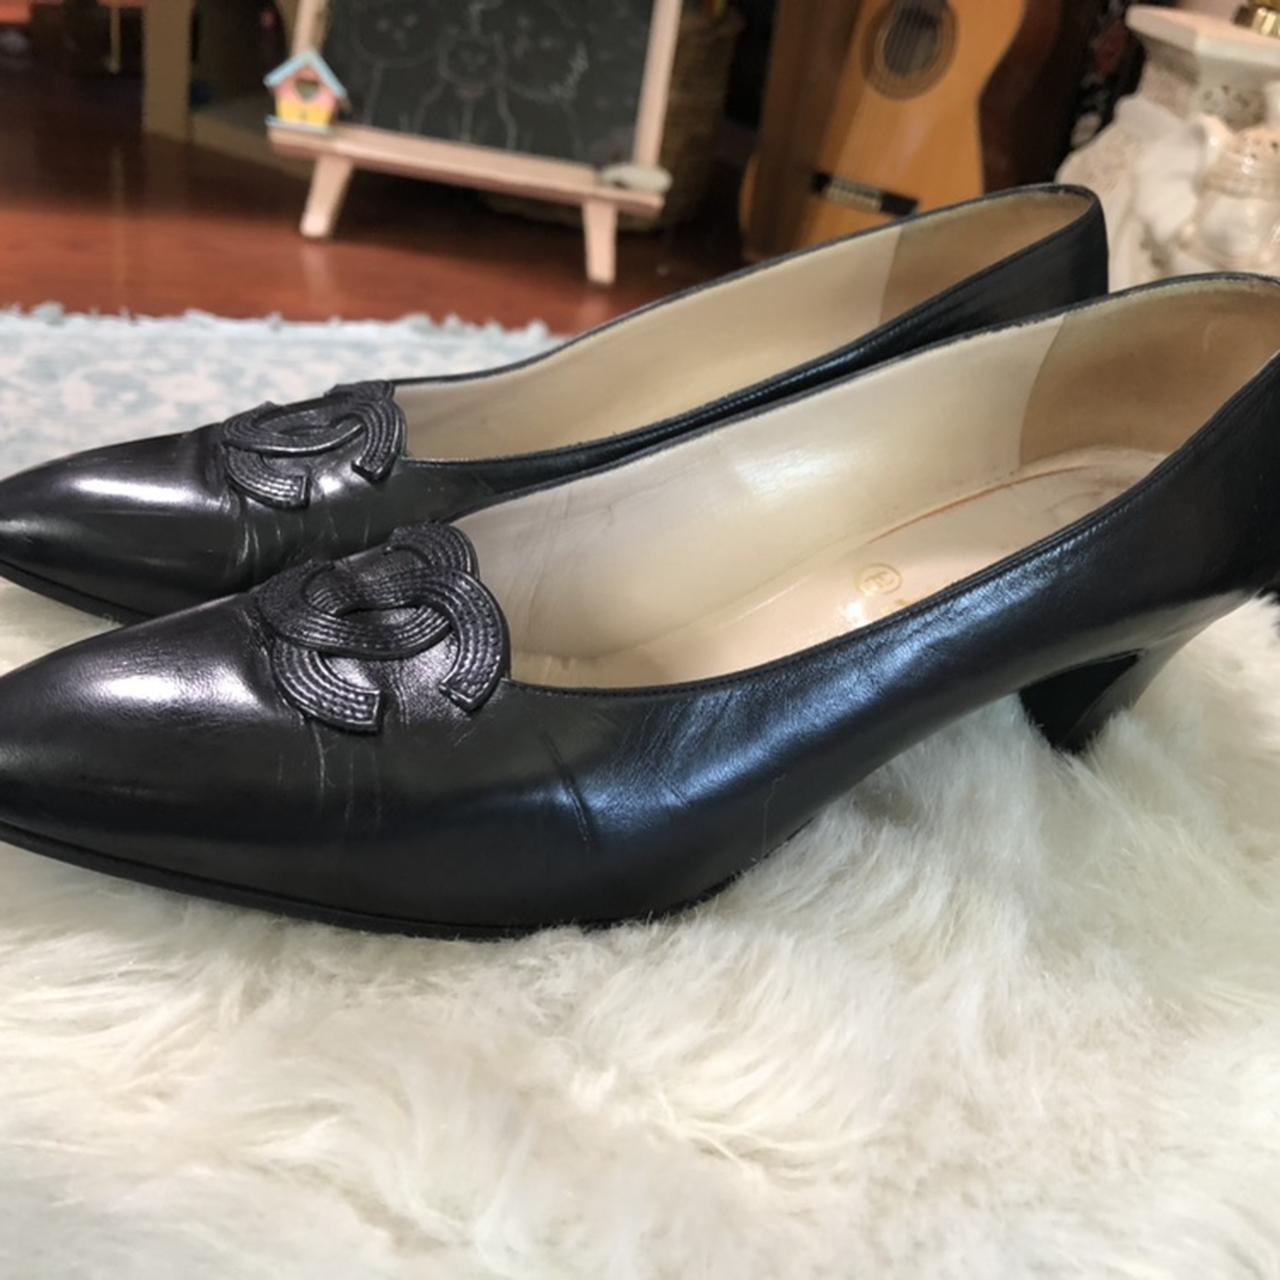 Chanel Vintage Classic Kitten Heels. Leather is in... - Depop